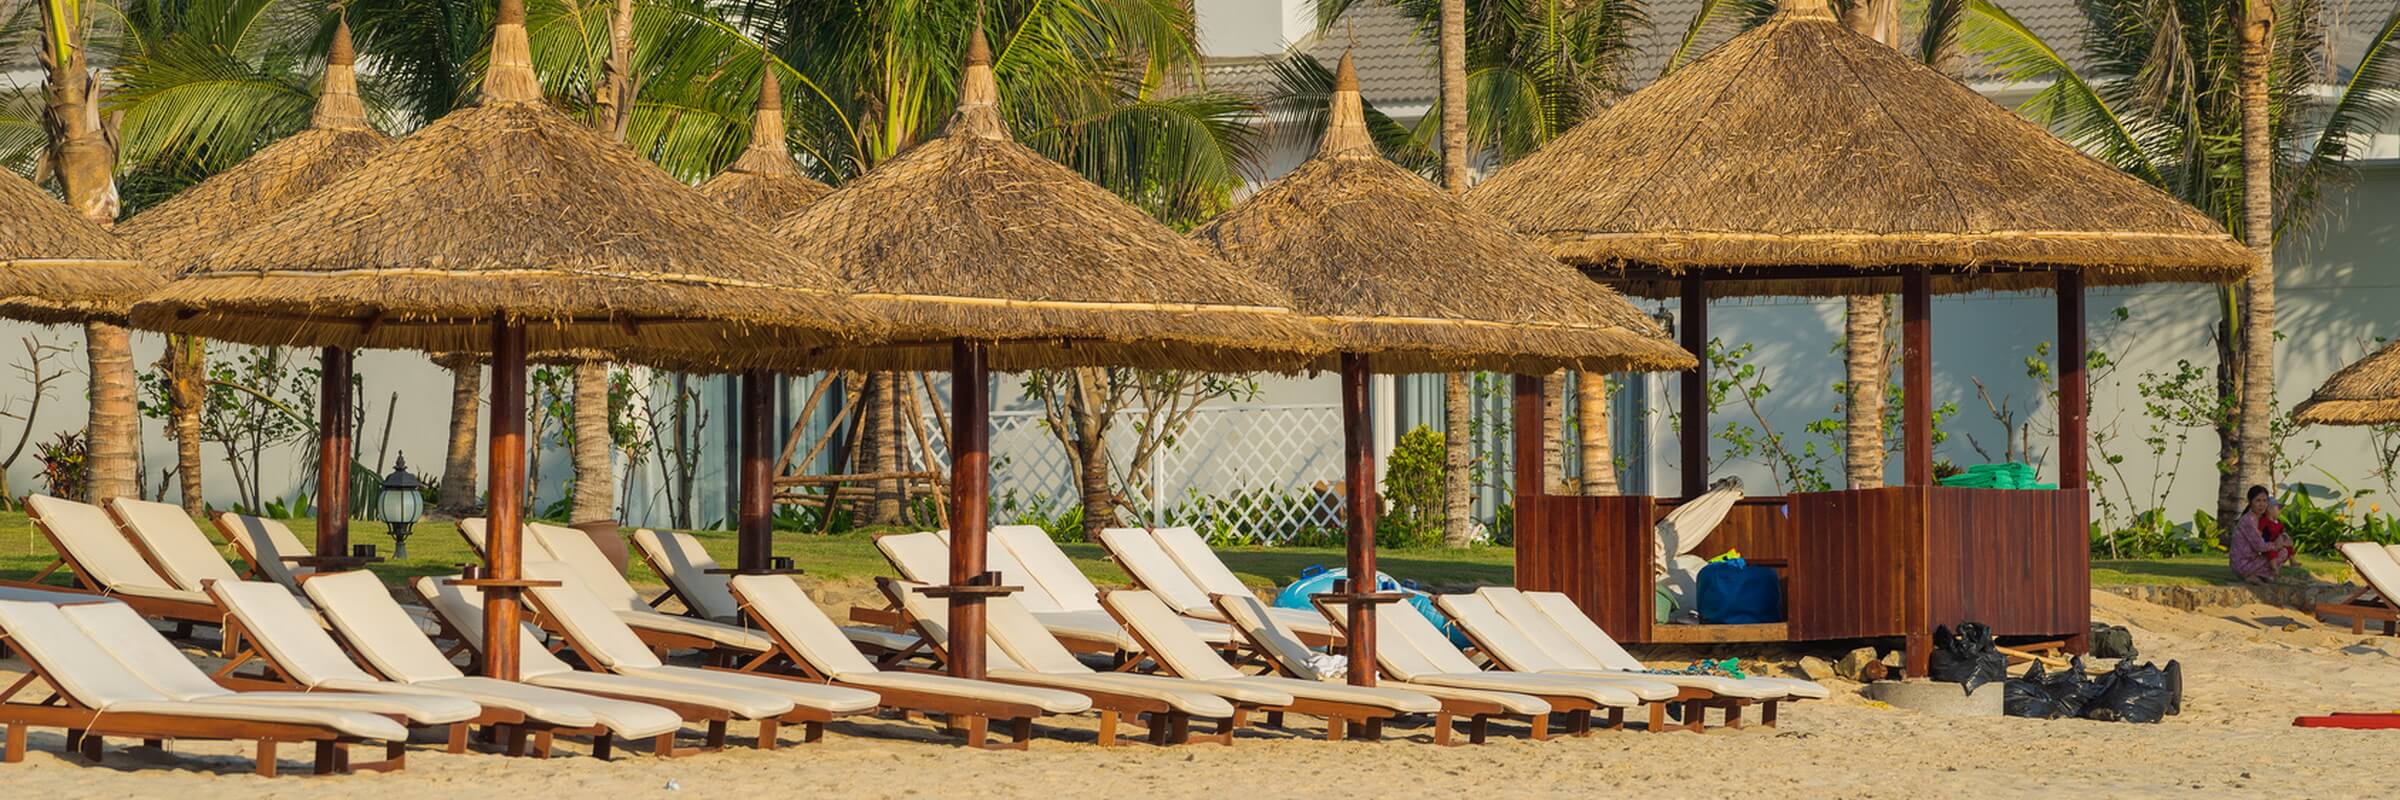 Entlang der Strandpromenade von Nha Trang gibt es Sonnenschirme, Liegestühle und einen umfassenden Strandservice sowie Cafés und Restaurants.